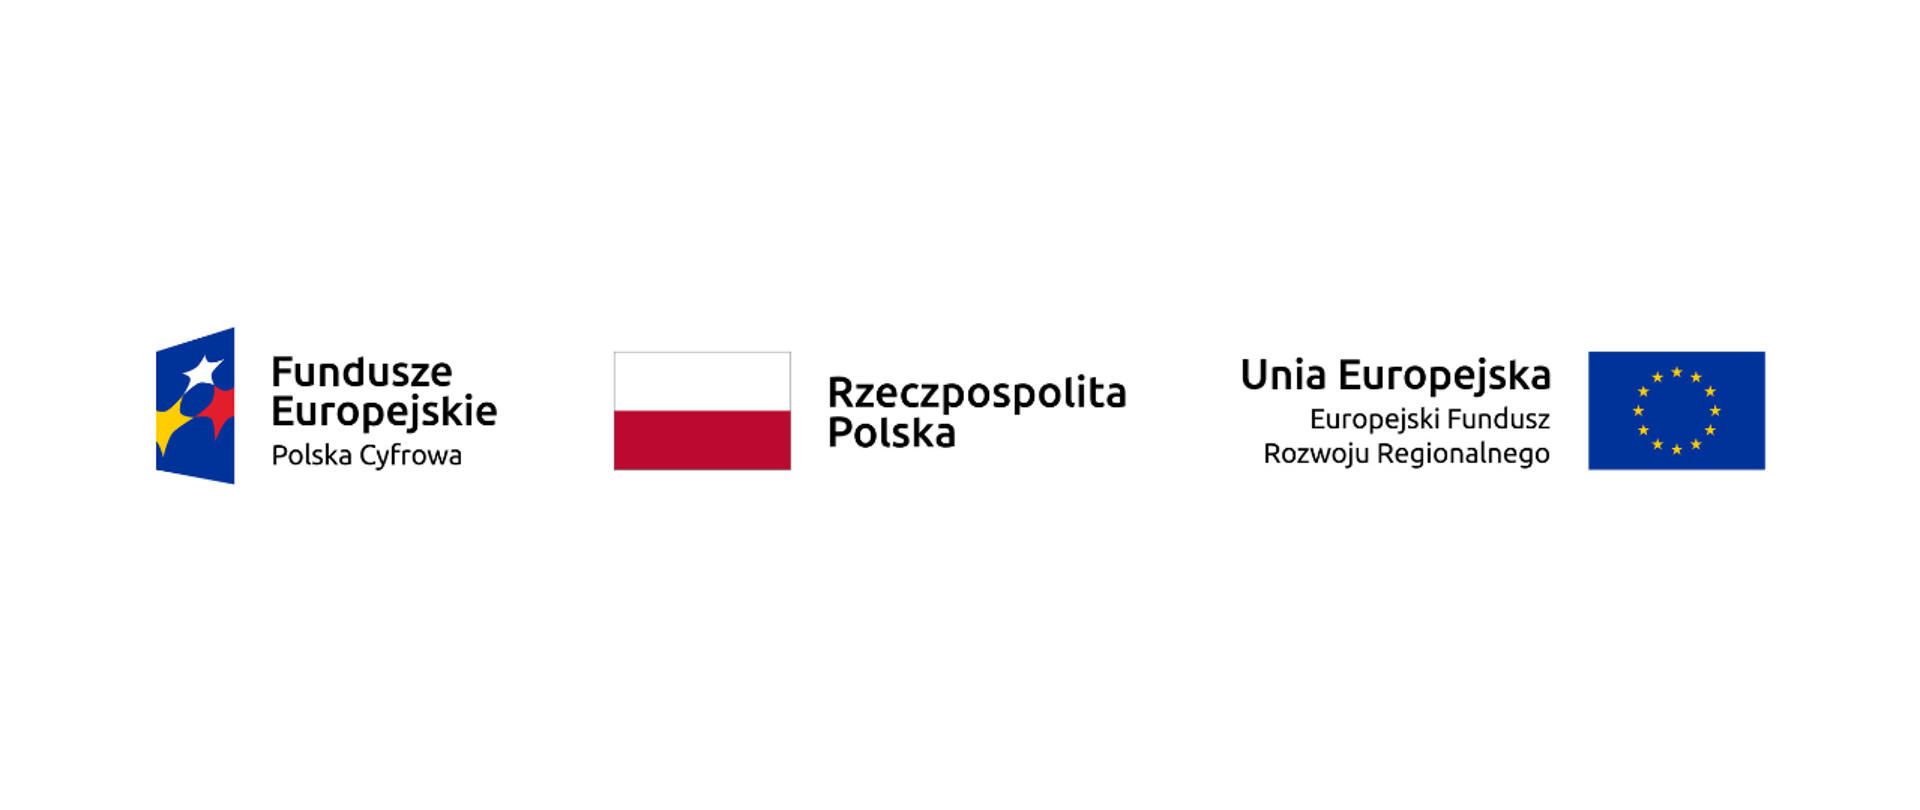 Fundusze Europejskie - Polska Cyfrowa, Rzeczpospolita Polska, Unia Europejska - Europejski Fundusz Rozwoju Regionalnego.